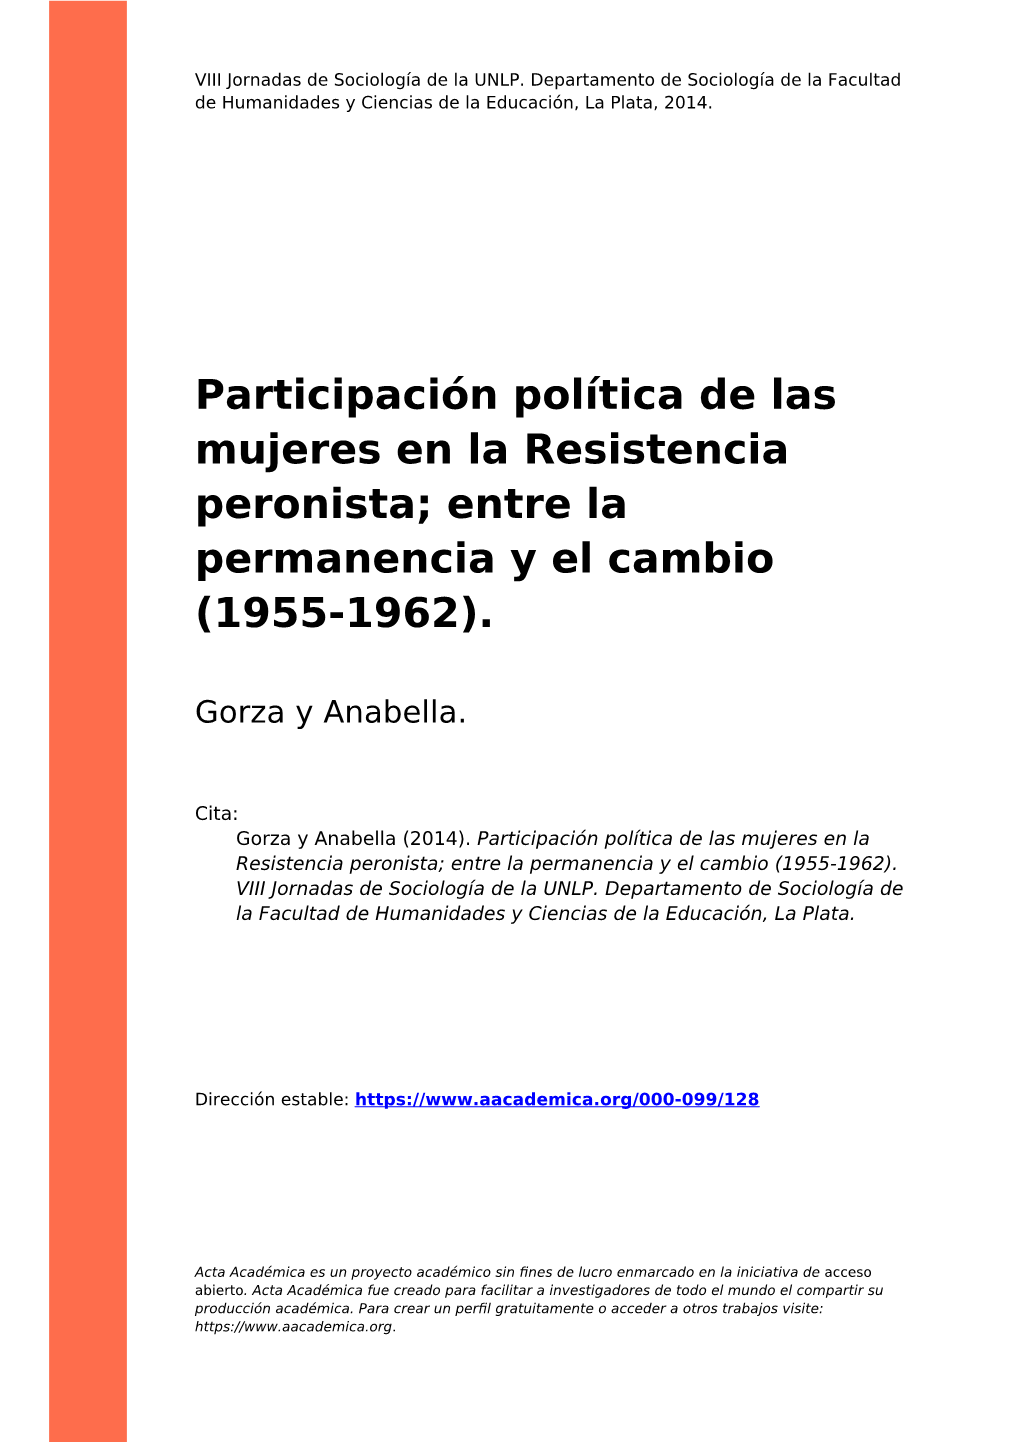 Participación Política De Las Mujeres En La Resistencia Peronista; Entre La Permanencia Y El Cambio (1955-1962)